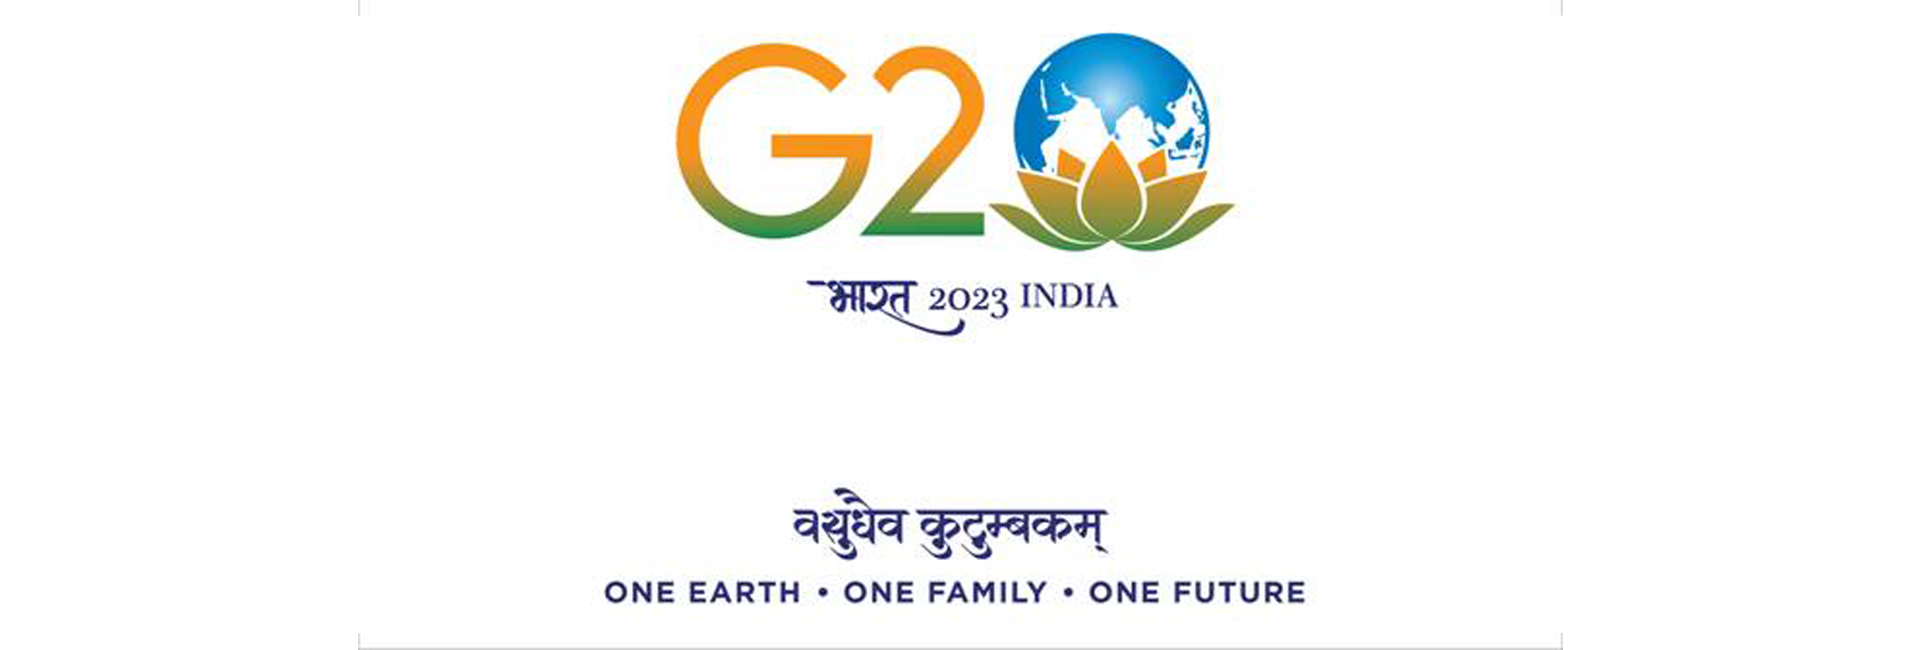 India's G20